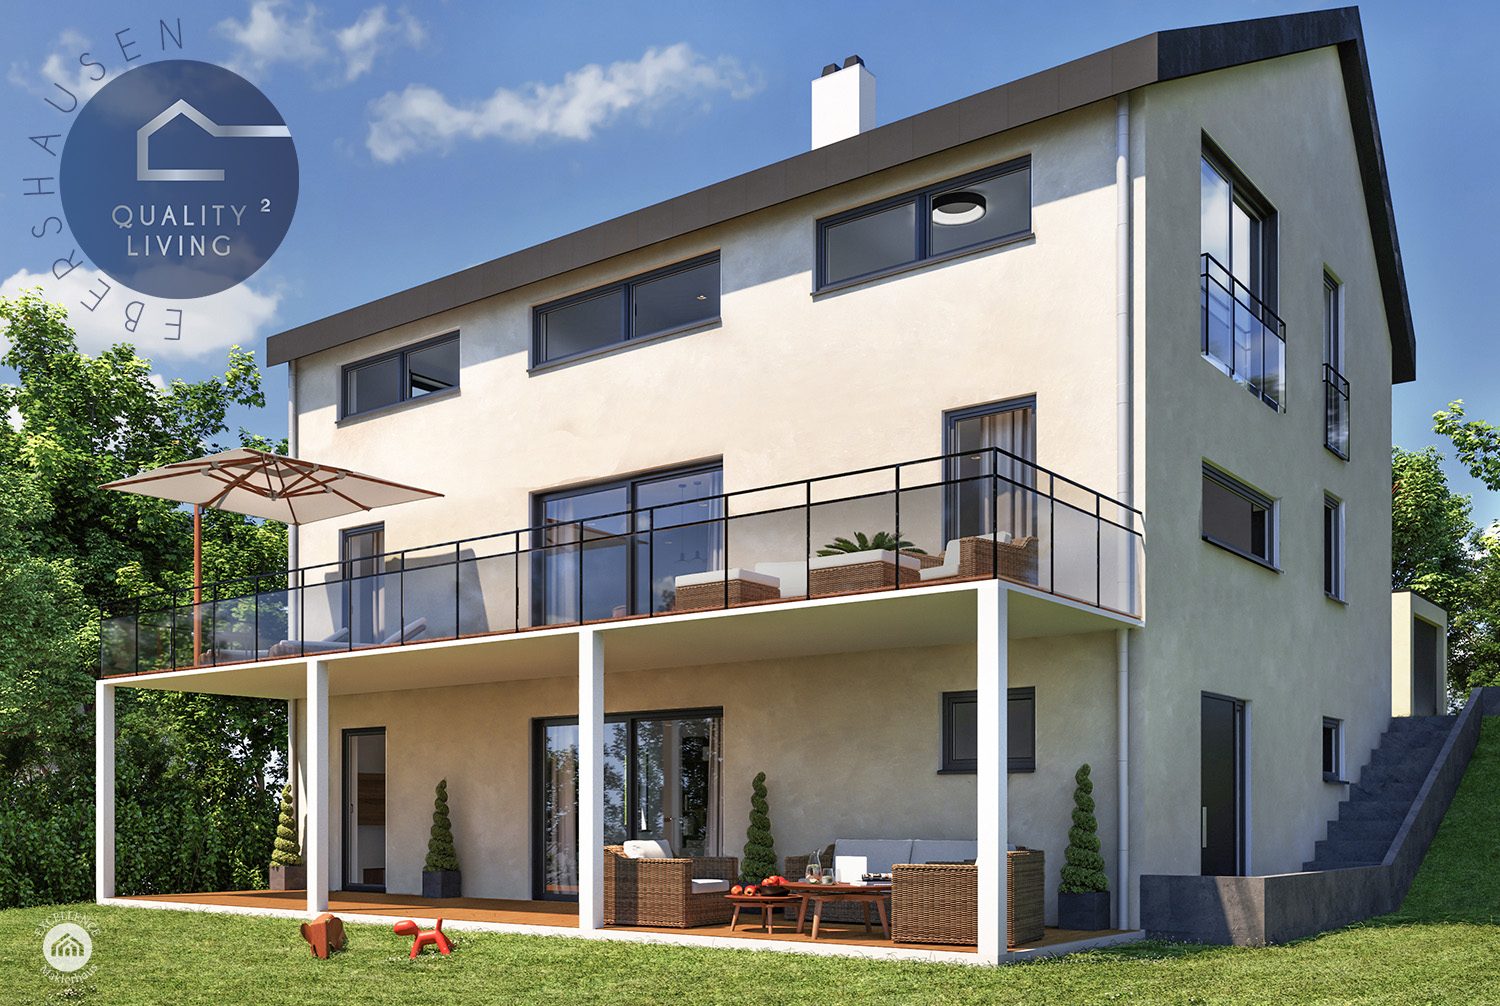 Immobilienangebot - Ebershausen - Alle - Quality Living²  in Ebershausen
Eigentumswohnung mit Terrasse und Garten